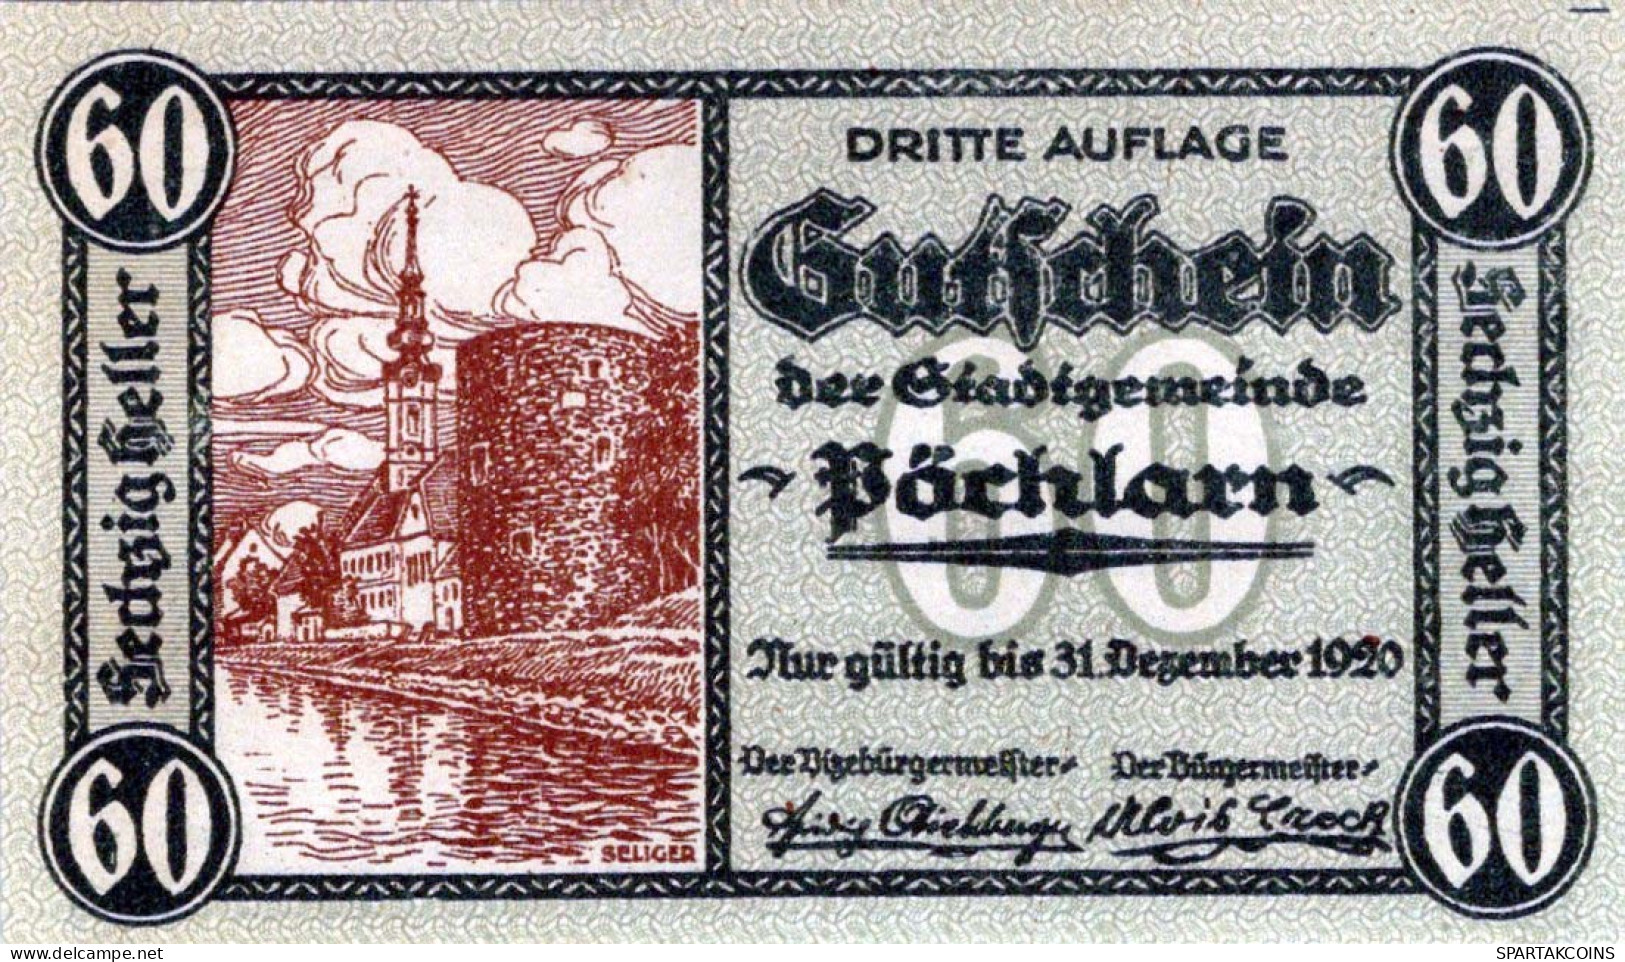 60 HELLER 1920 Stadt PoCHLARN Niedrigeren Österreich Notgeld Banknote #PE306 - Lokale Ausgaben